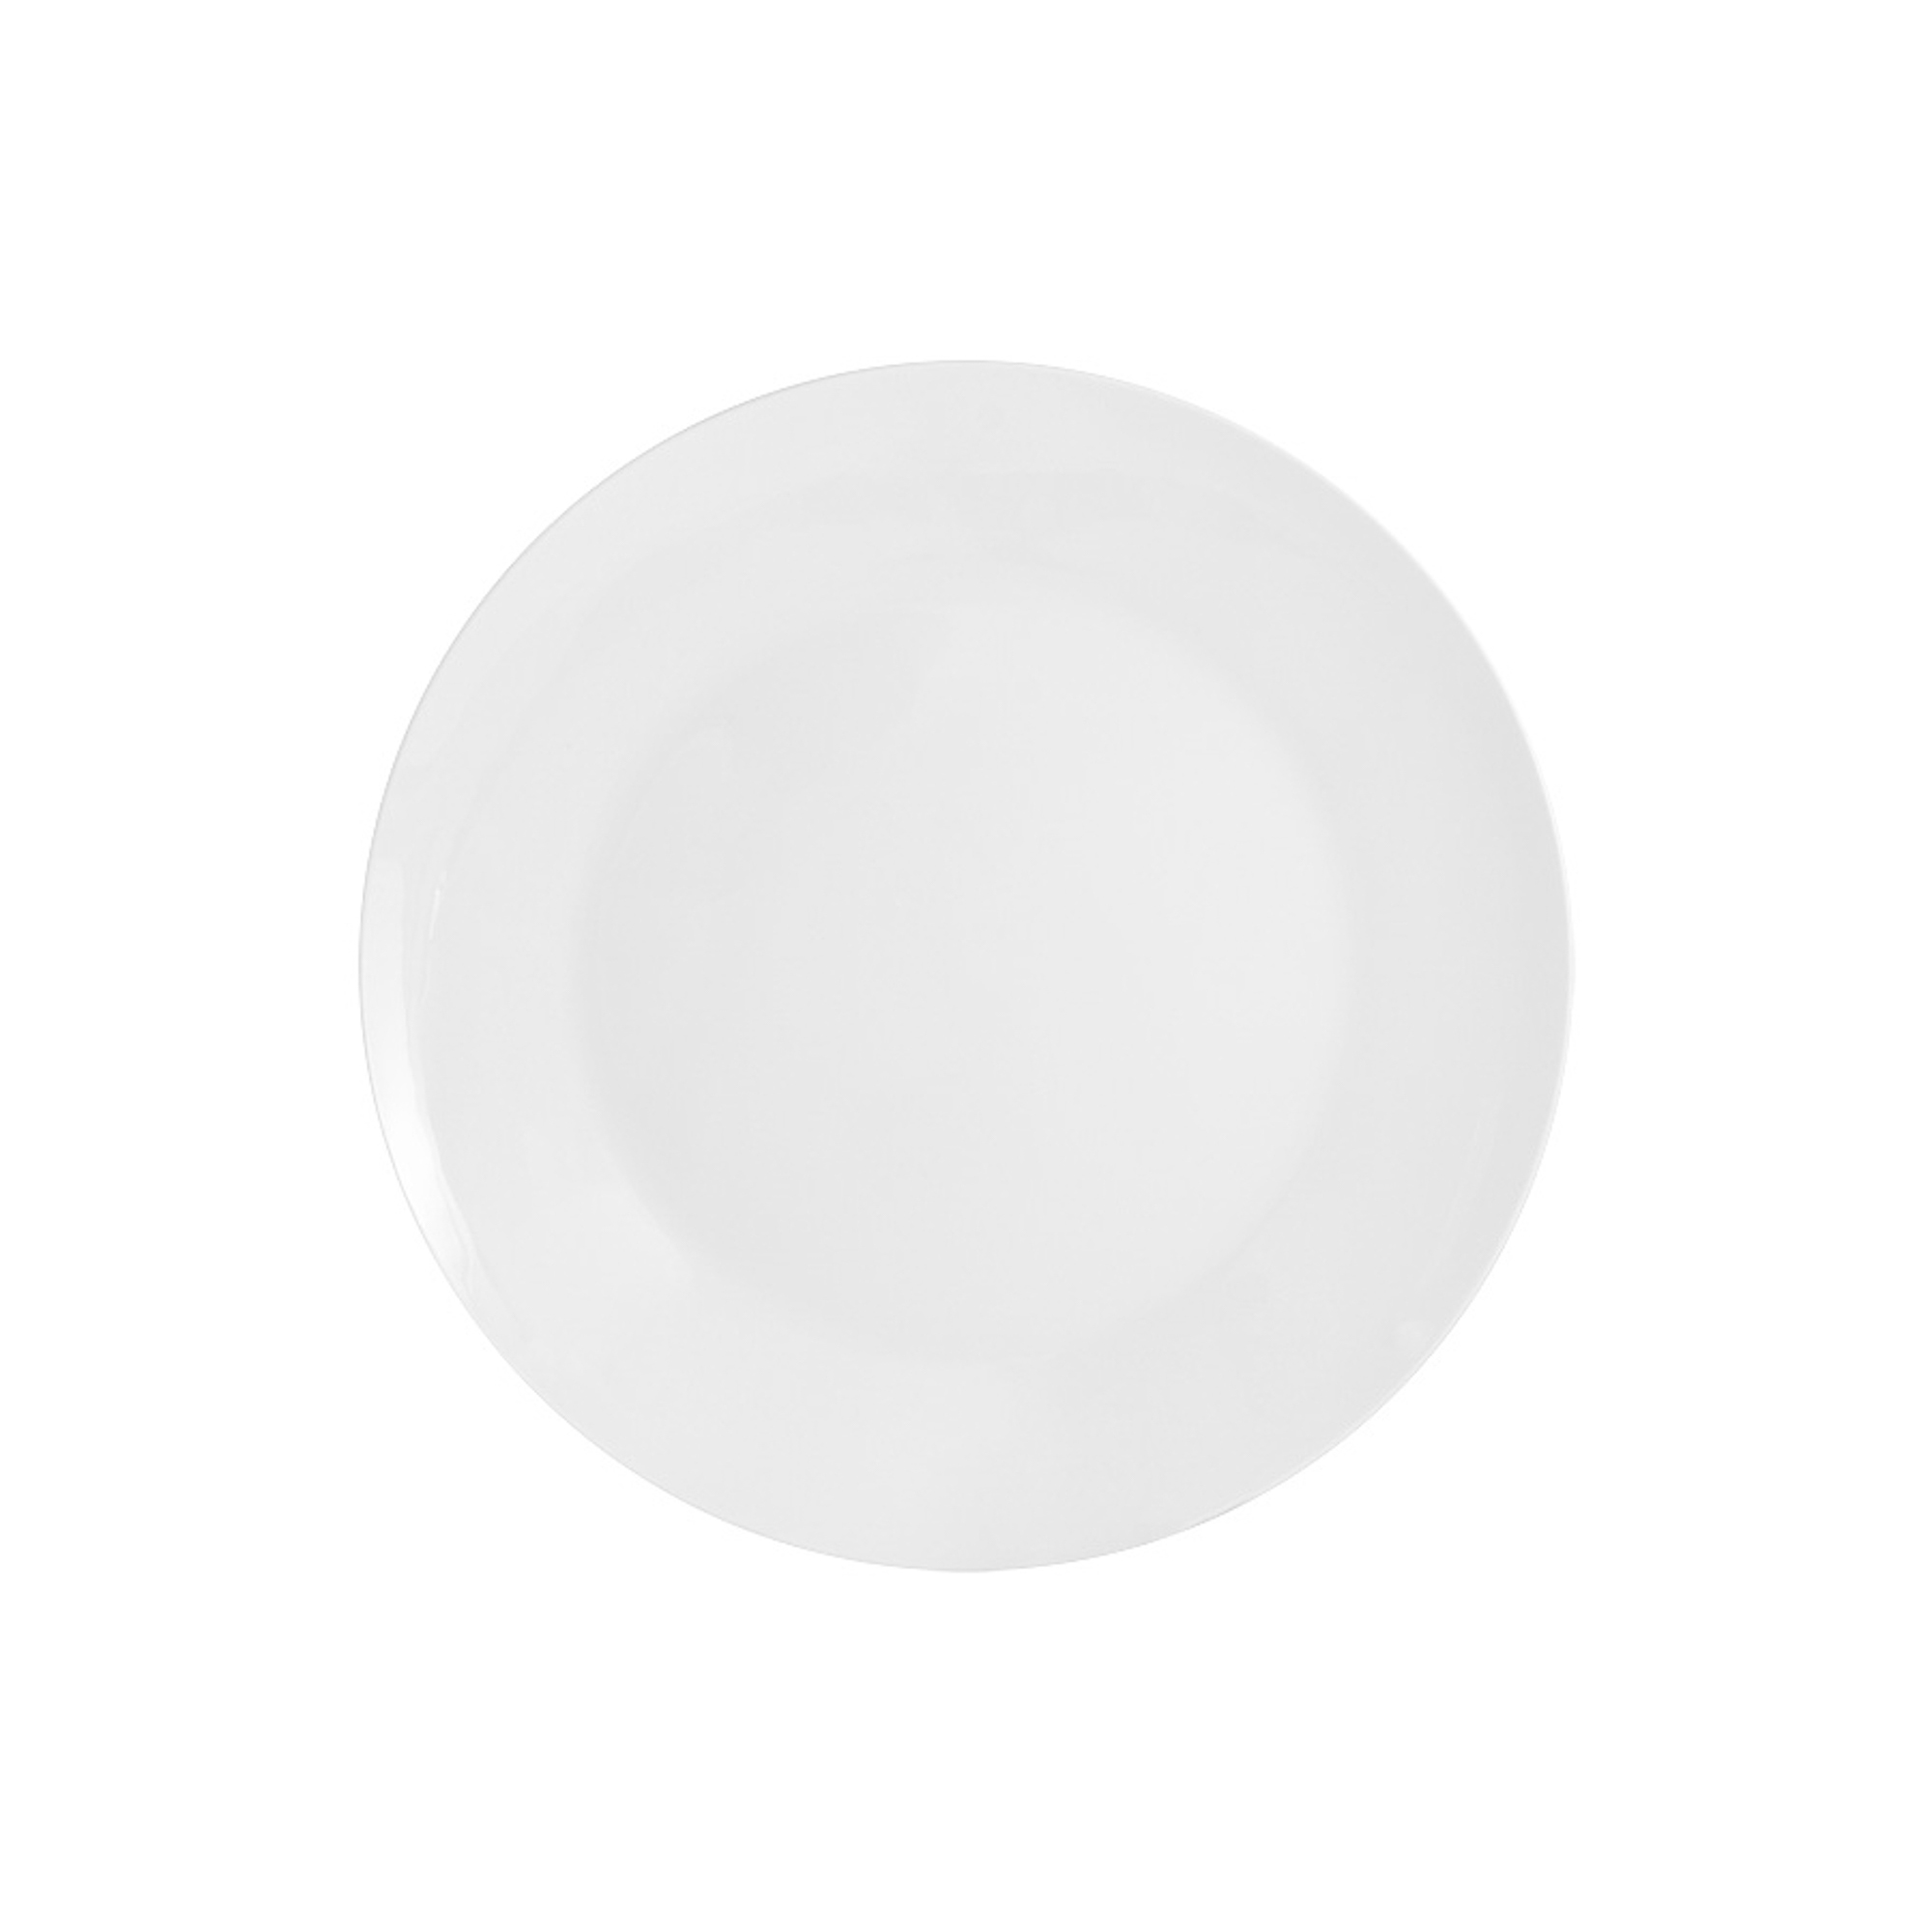 Тарелка обеденная Maxwell & Williams Кашемир 27 см тарелка обеденная royal garden эвкалиптовый венок 27 см